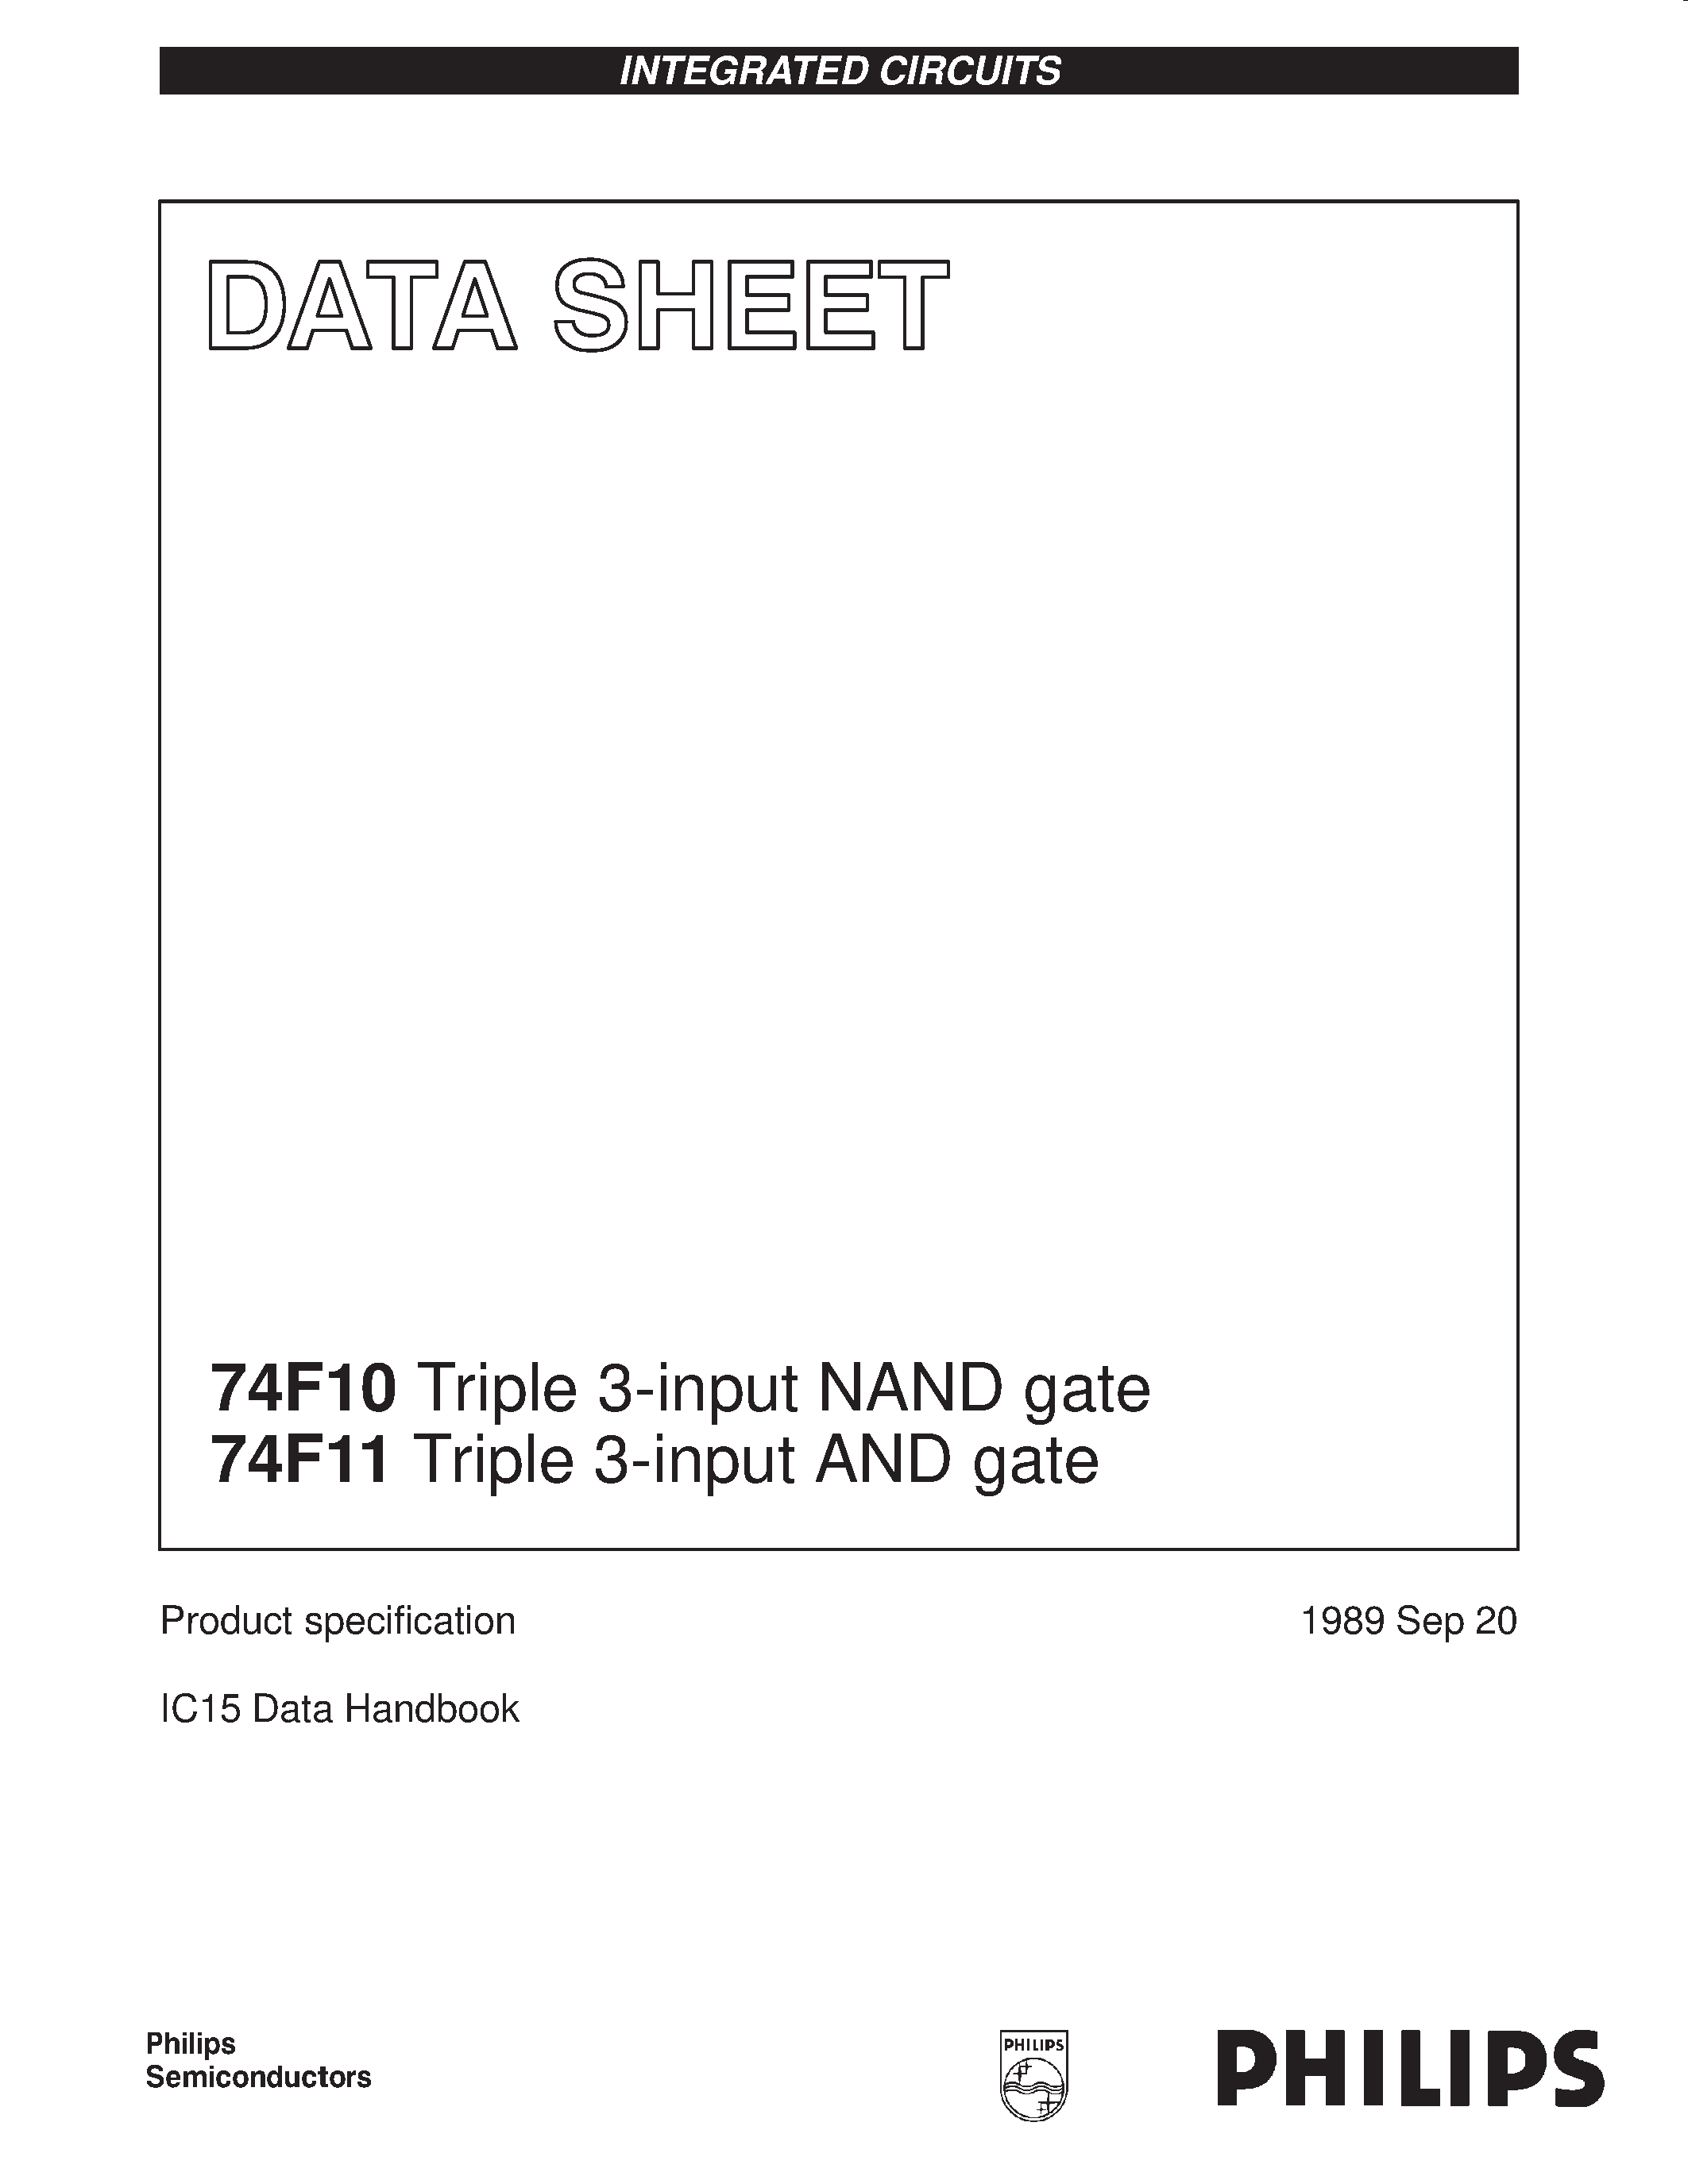 Datasheet 74F10 - Triple 3-input NAND gate page 1